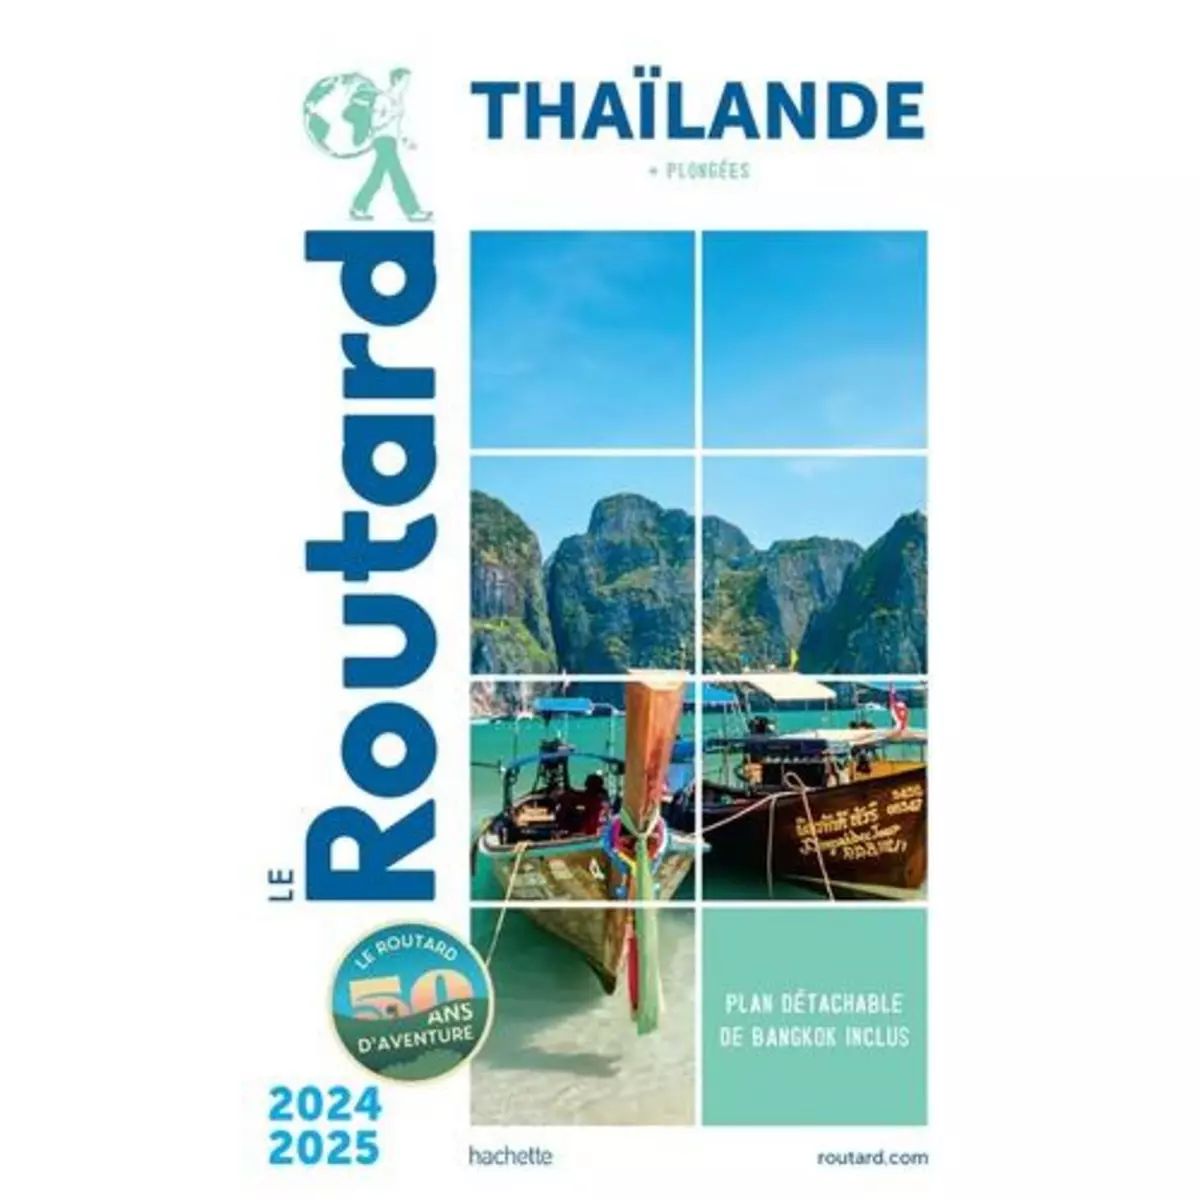  THAILANDE. EDITION 2024-2025. AVEC 1 PLAN DETACHABLE, Le Routard